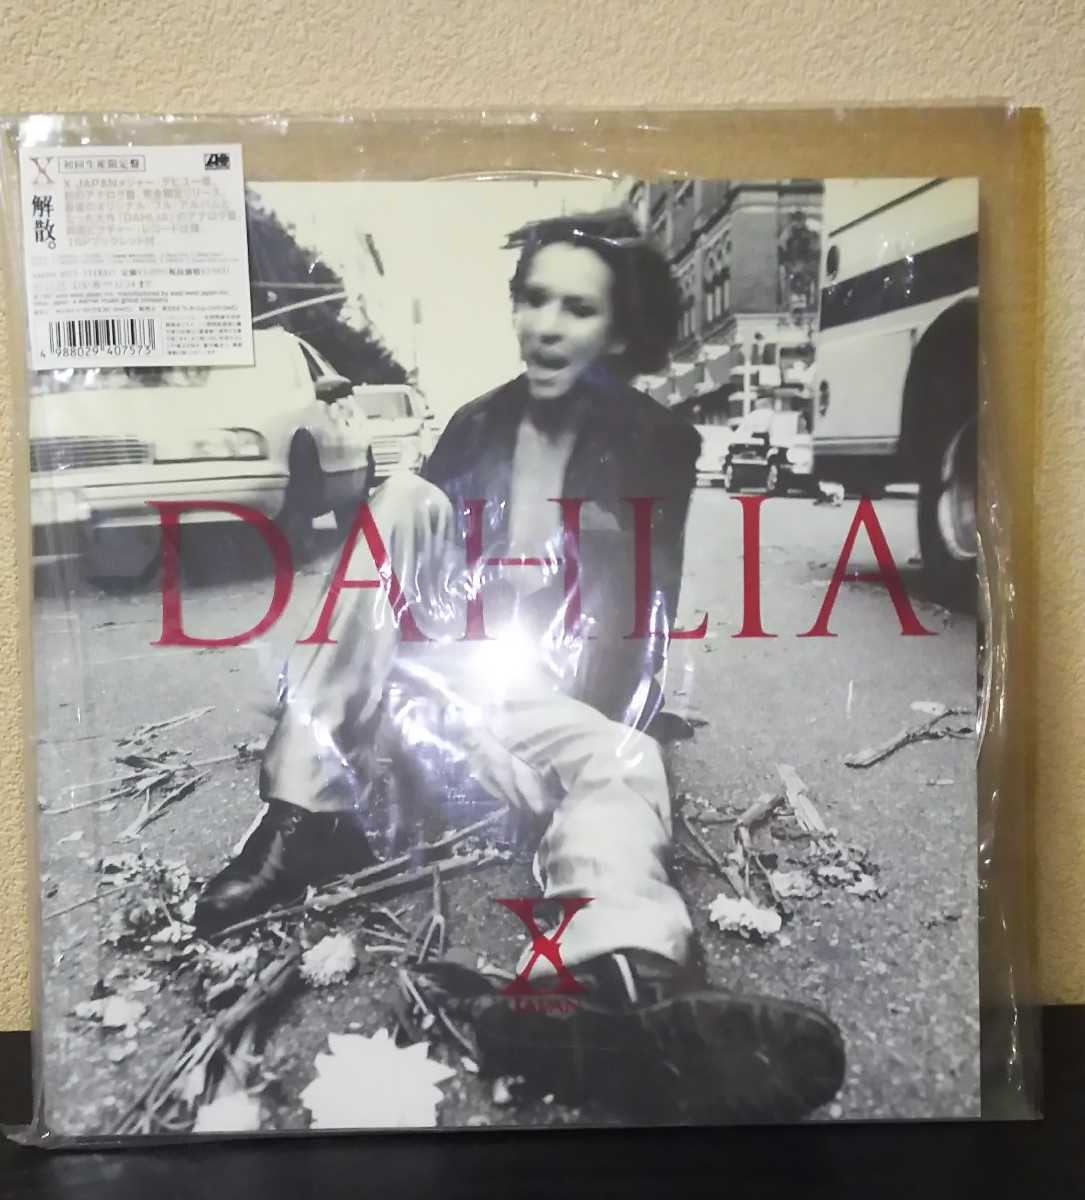 X JAPAN DAHLIA LP 限定版 - library.iainponorogo.ac.id